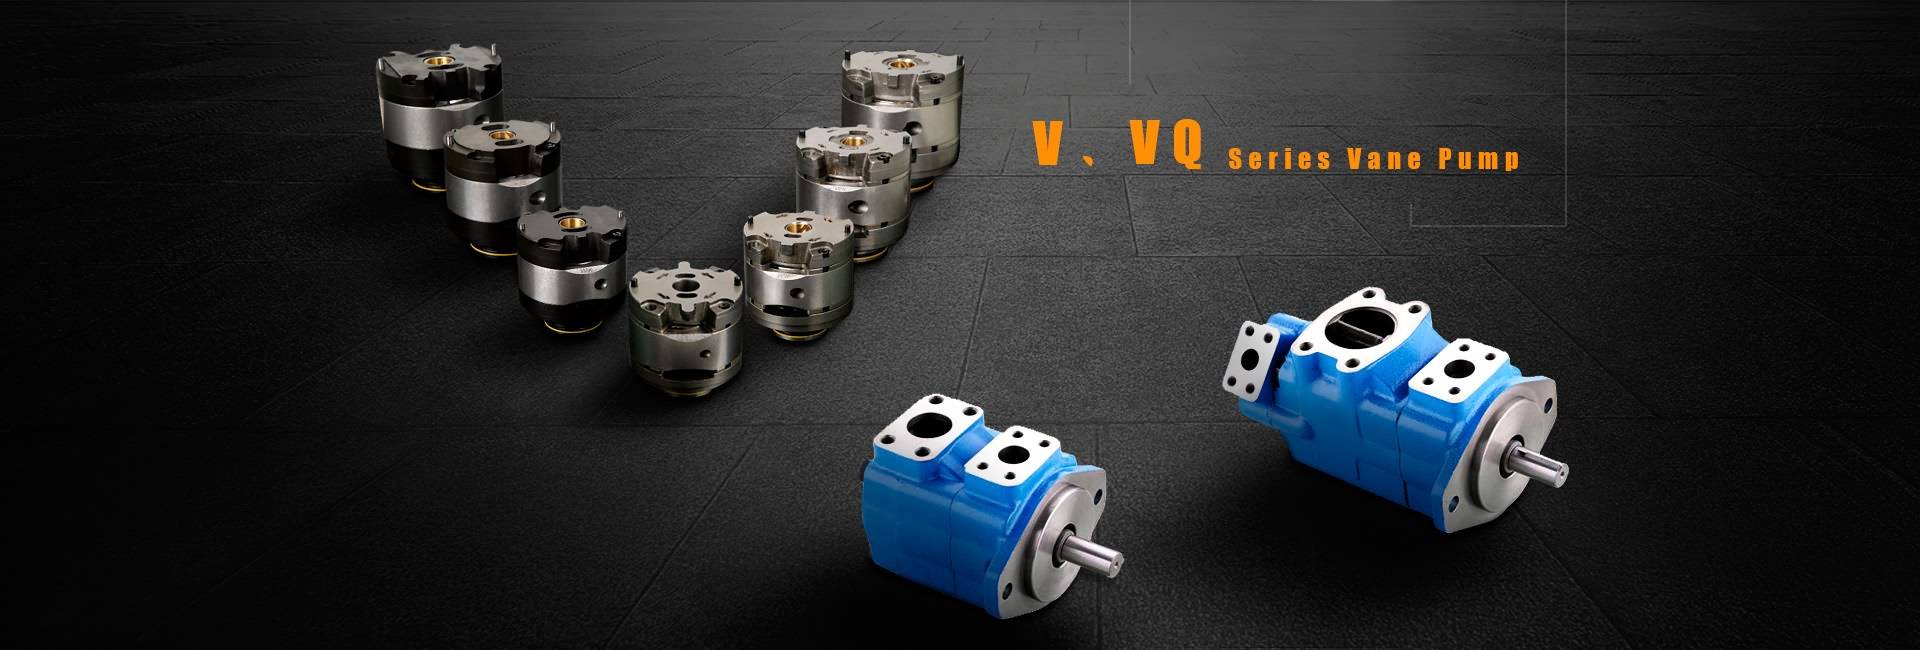 V, VQ Series დადებითი პოზიცია ფართომასშტაბიან Pump